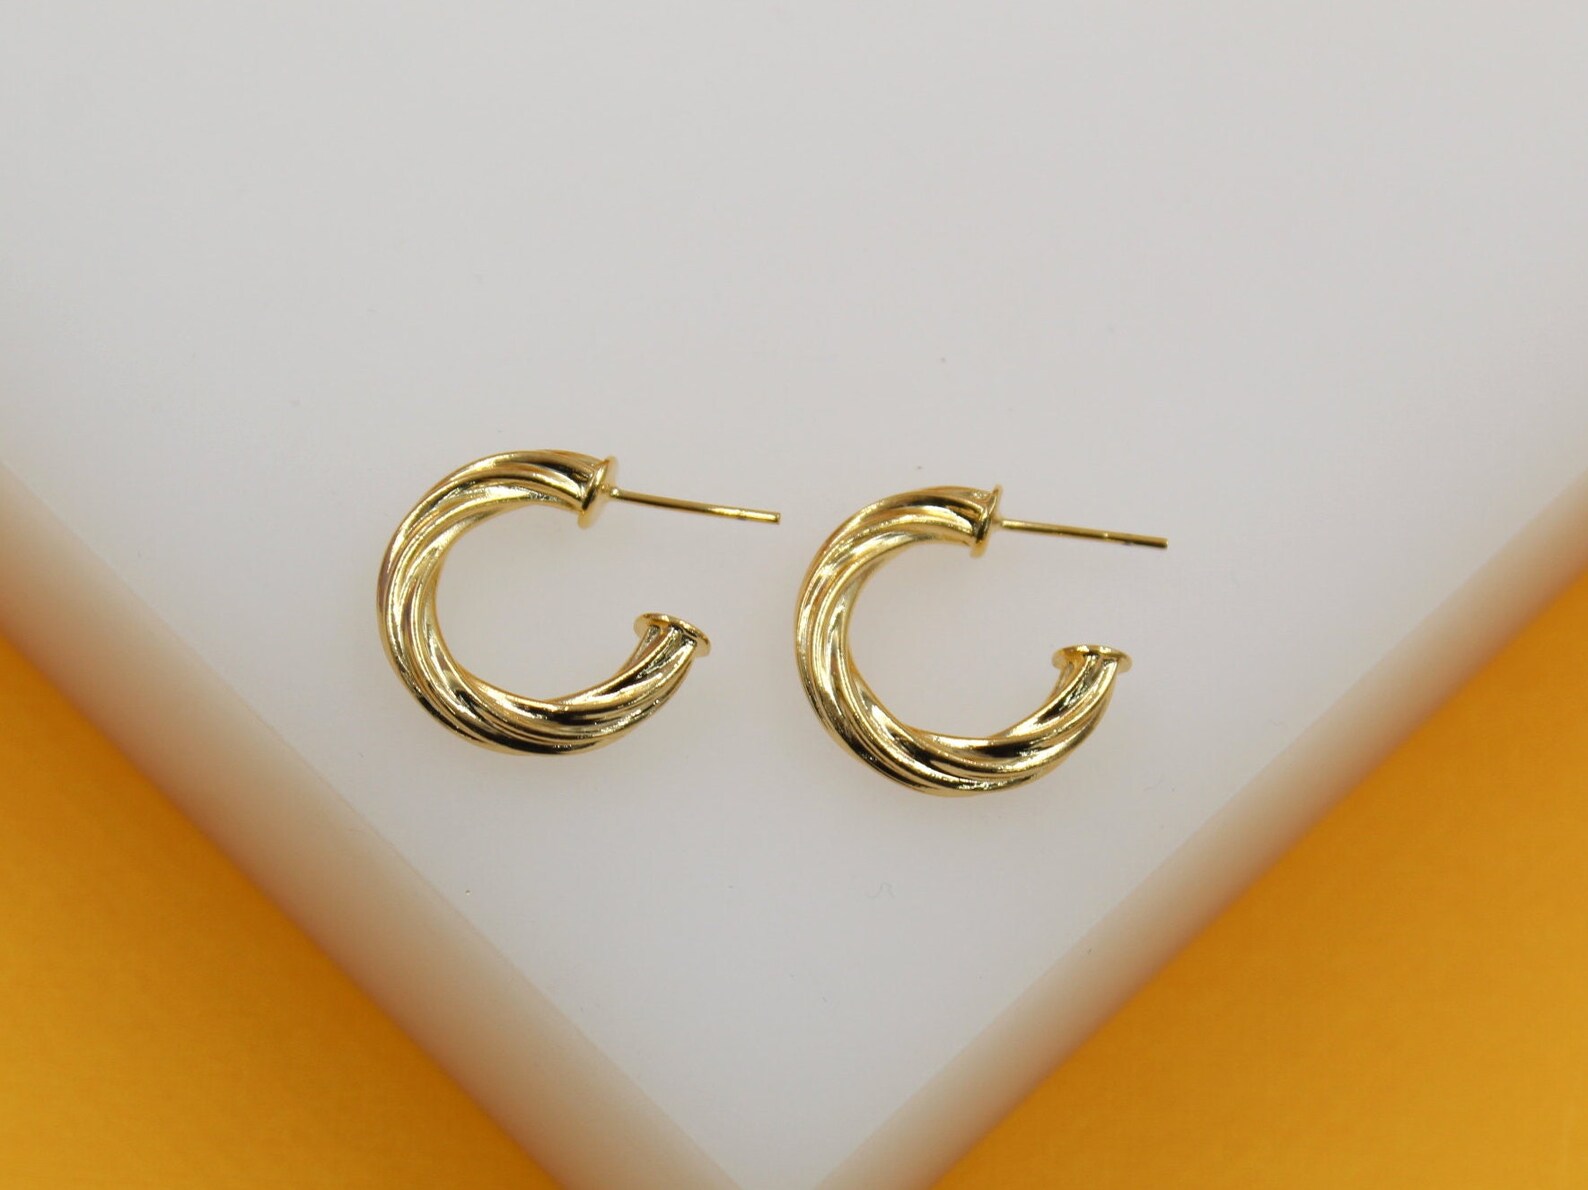 18K Gold Filled 4mm Twisted Open Hoop Earrings (J128)(J130)(J132)